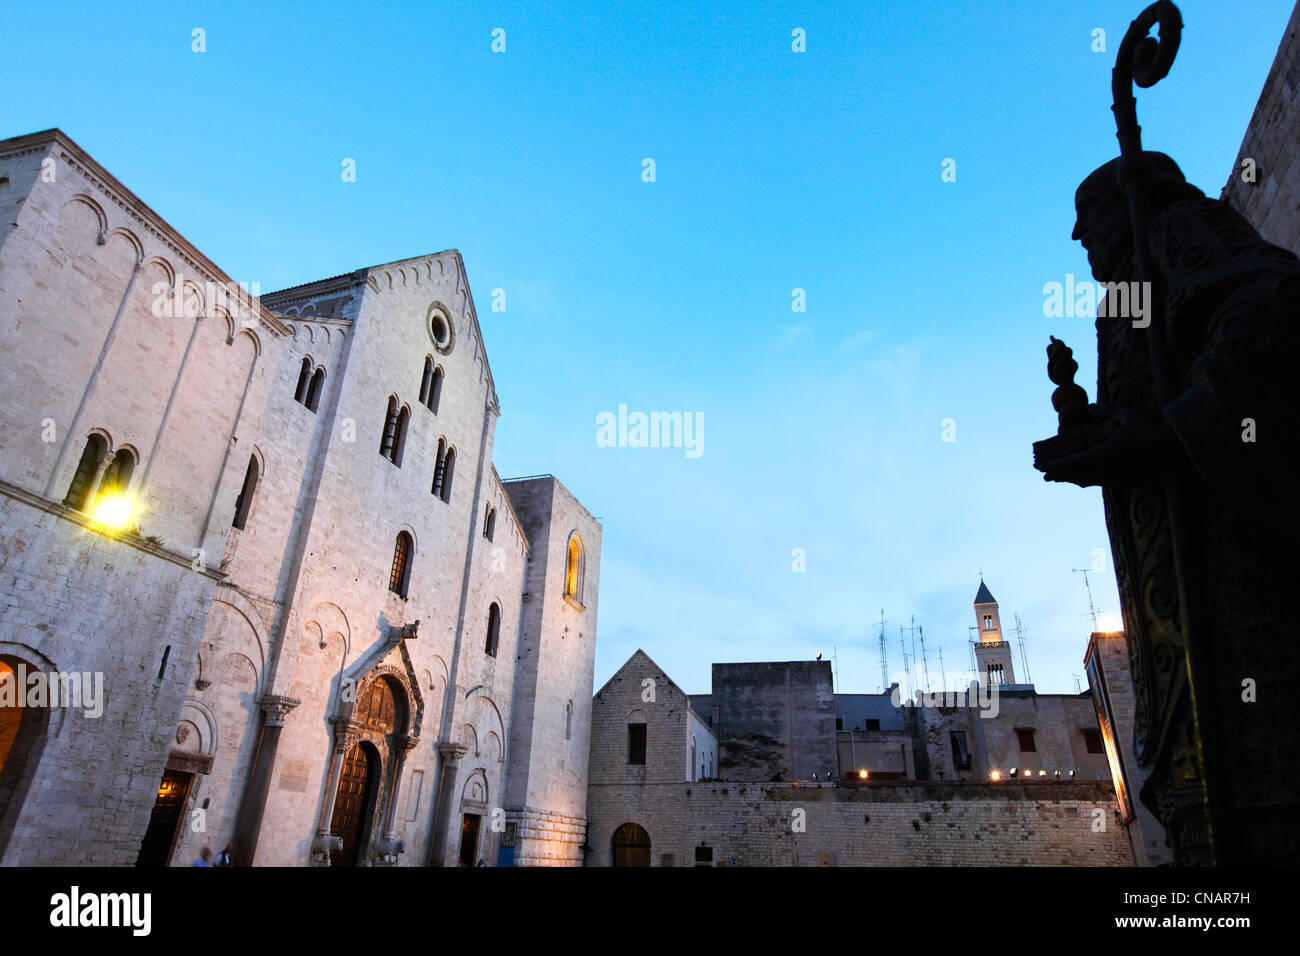 Italien, Apulien, Bari, die Altstadt, Basilica di San Nicola (St Nicholas Basilica) erbaut zwischen 1087 und 1197, während die Stockfoto